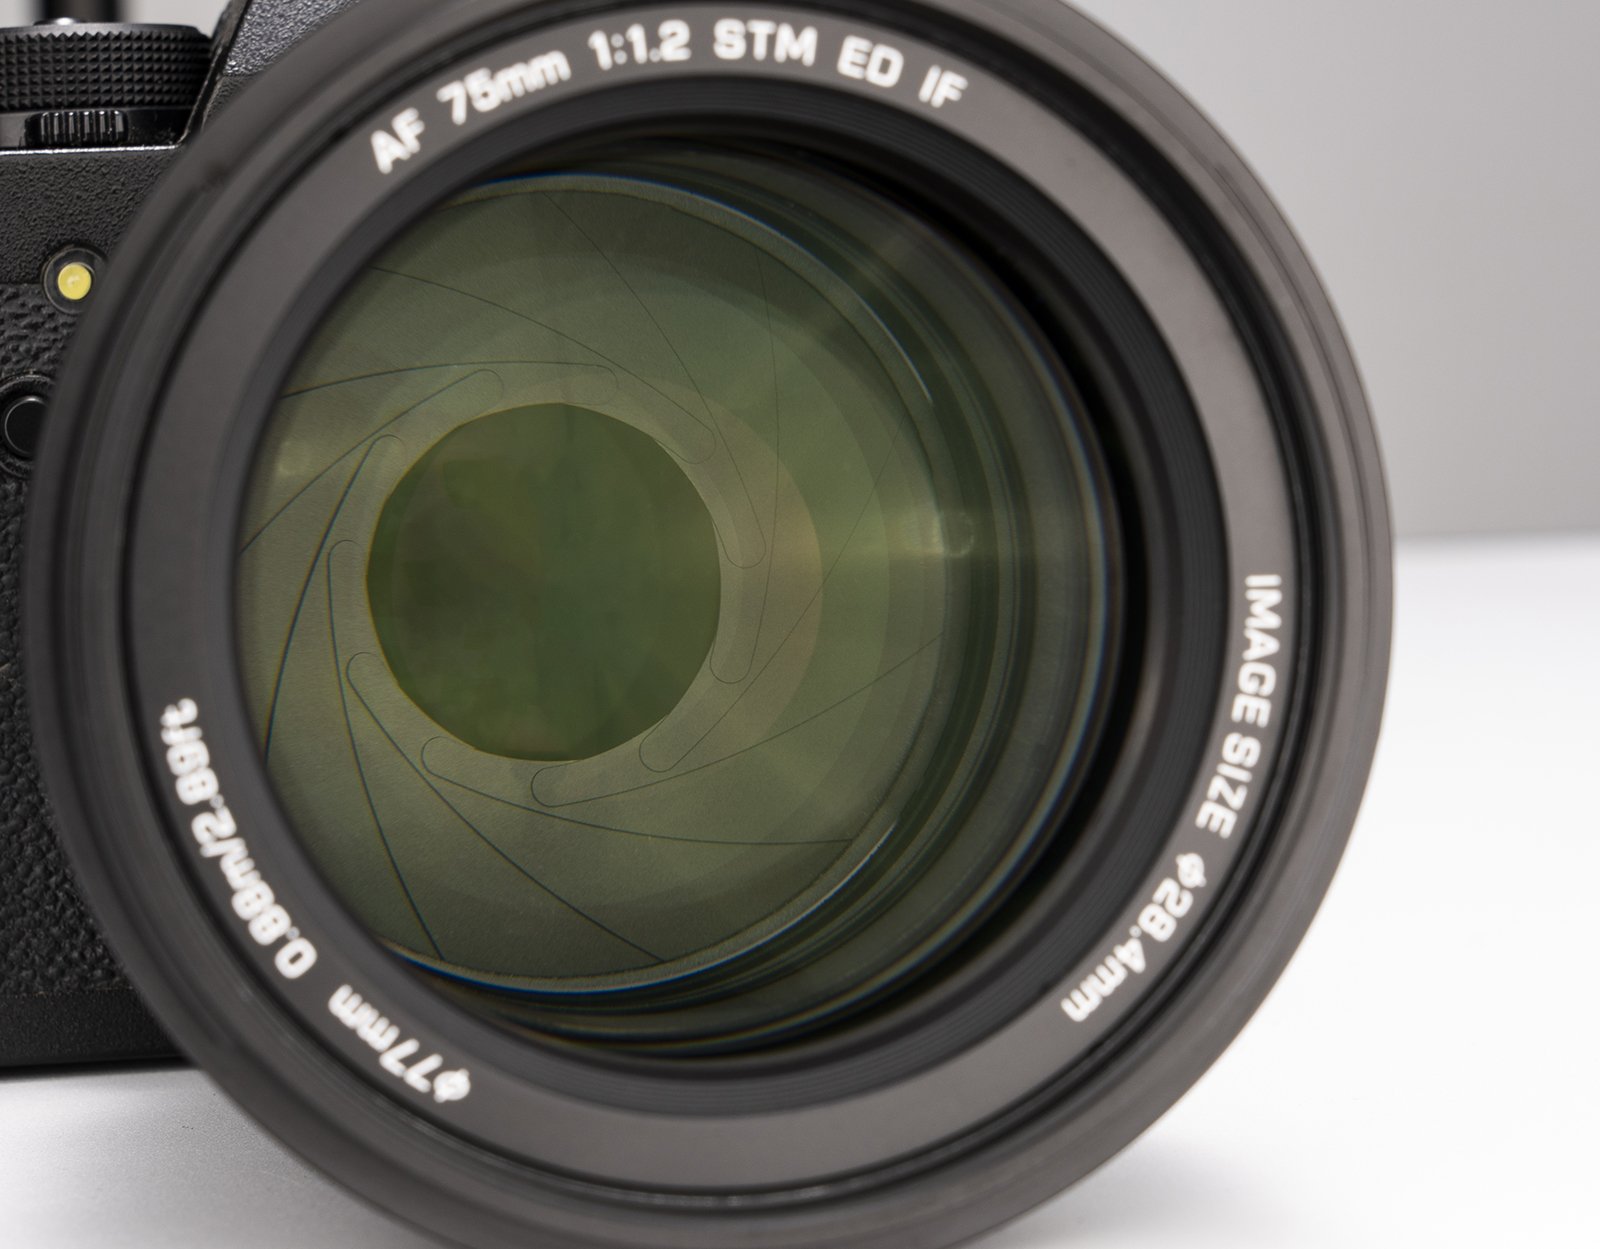 Viltrox ra mắt ống kính chân dung cao cấp Viltrox AF 75mm F1.2 cho Fujifilm X